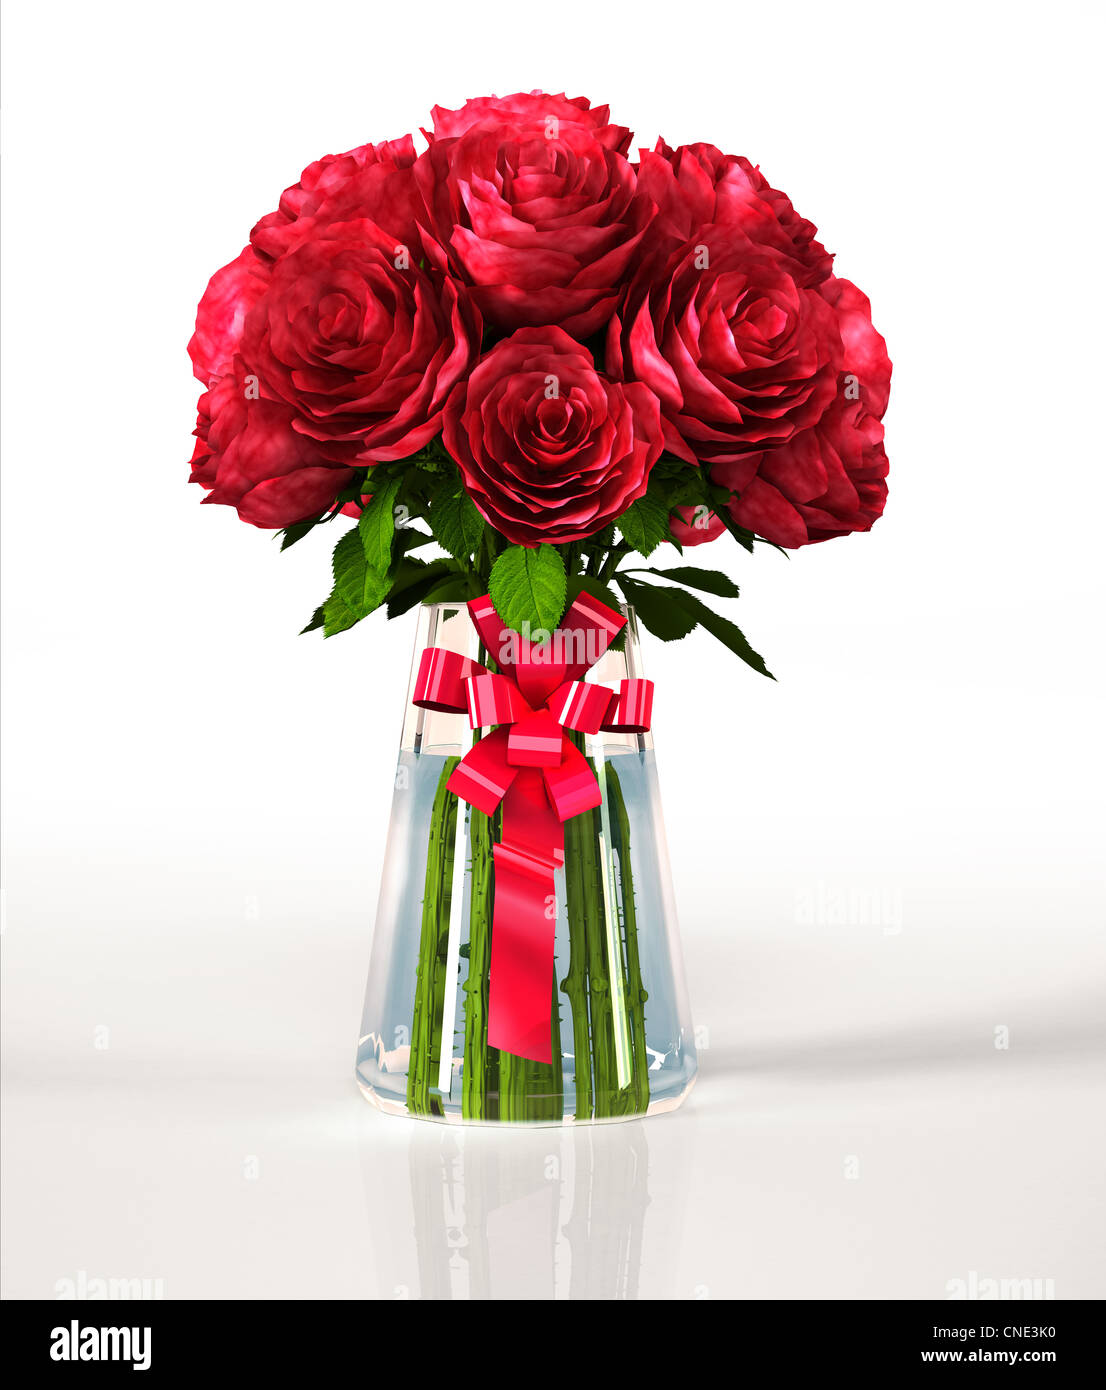 Glas-Vase voller grosse rote Rosen mit Band. Auf weißen reflektierenden Oberfläche und weißen Hintergrund. Clipping-Pfad enthalten. Stockfoto